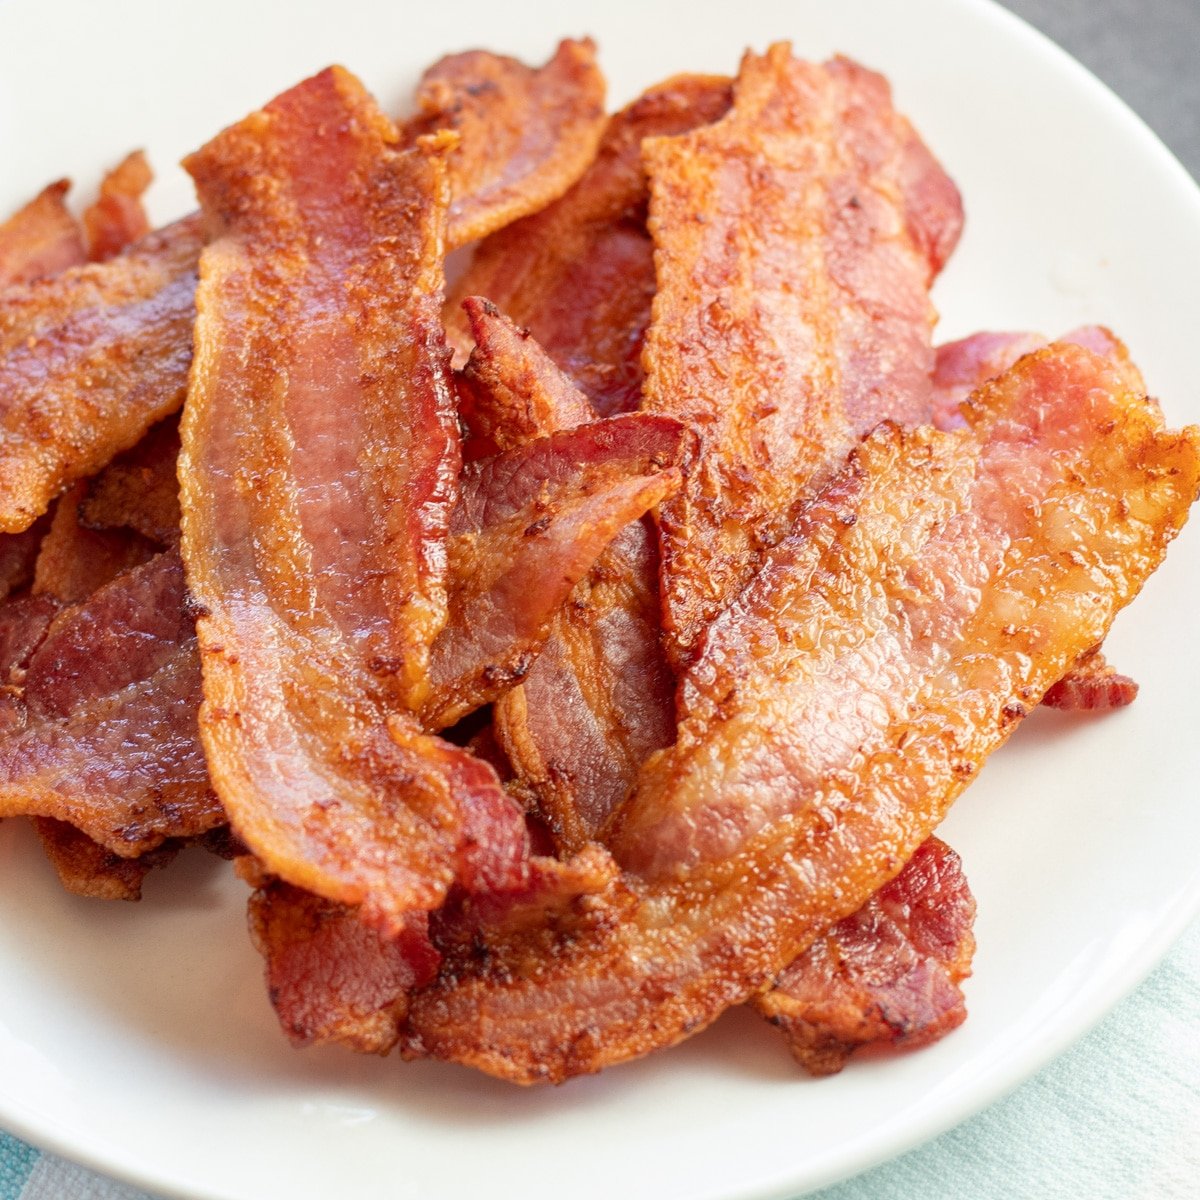 Bacon penggorengan udara yang sangat renyah disajikan di piring kecil.